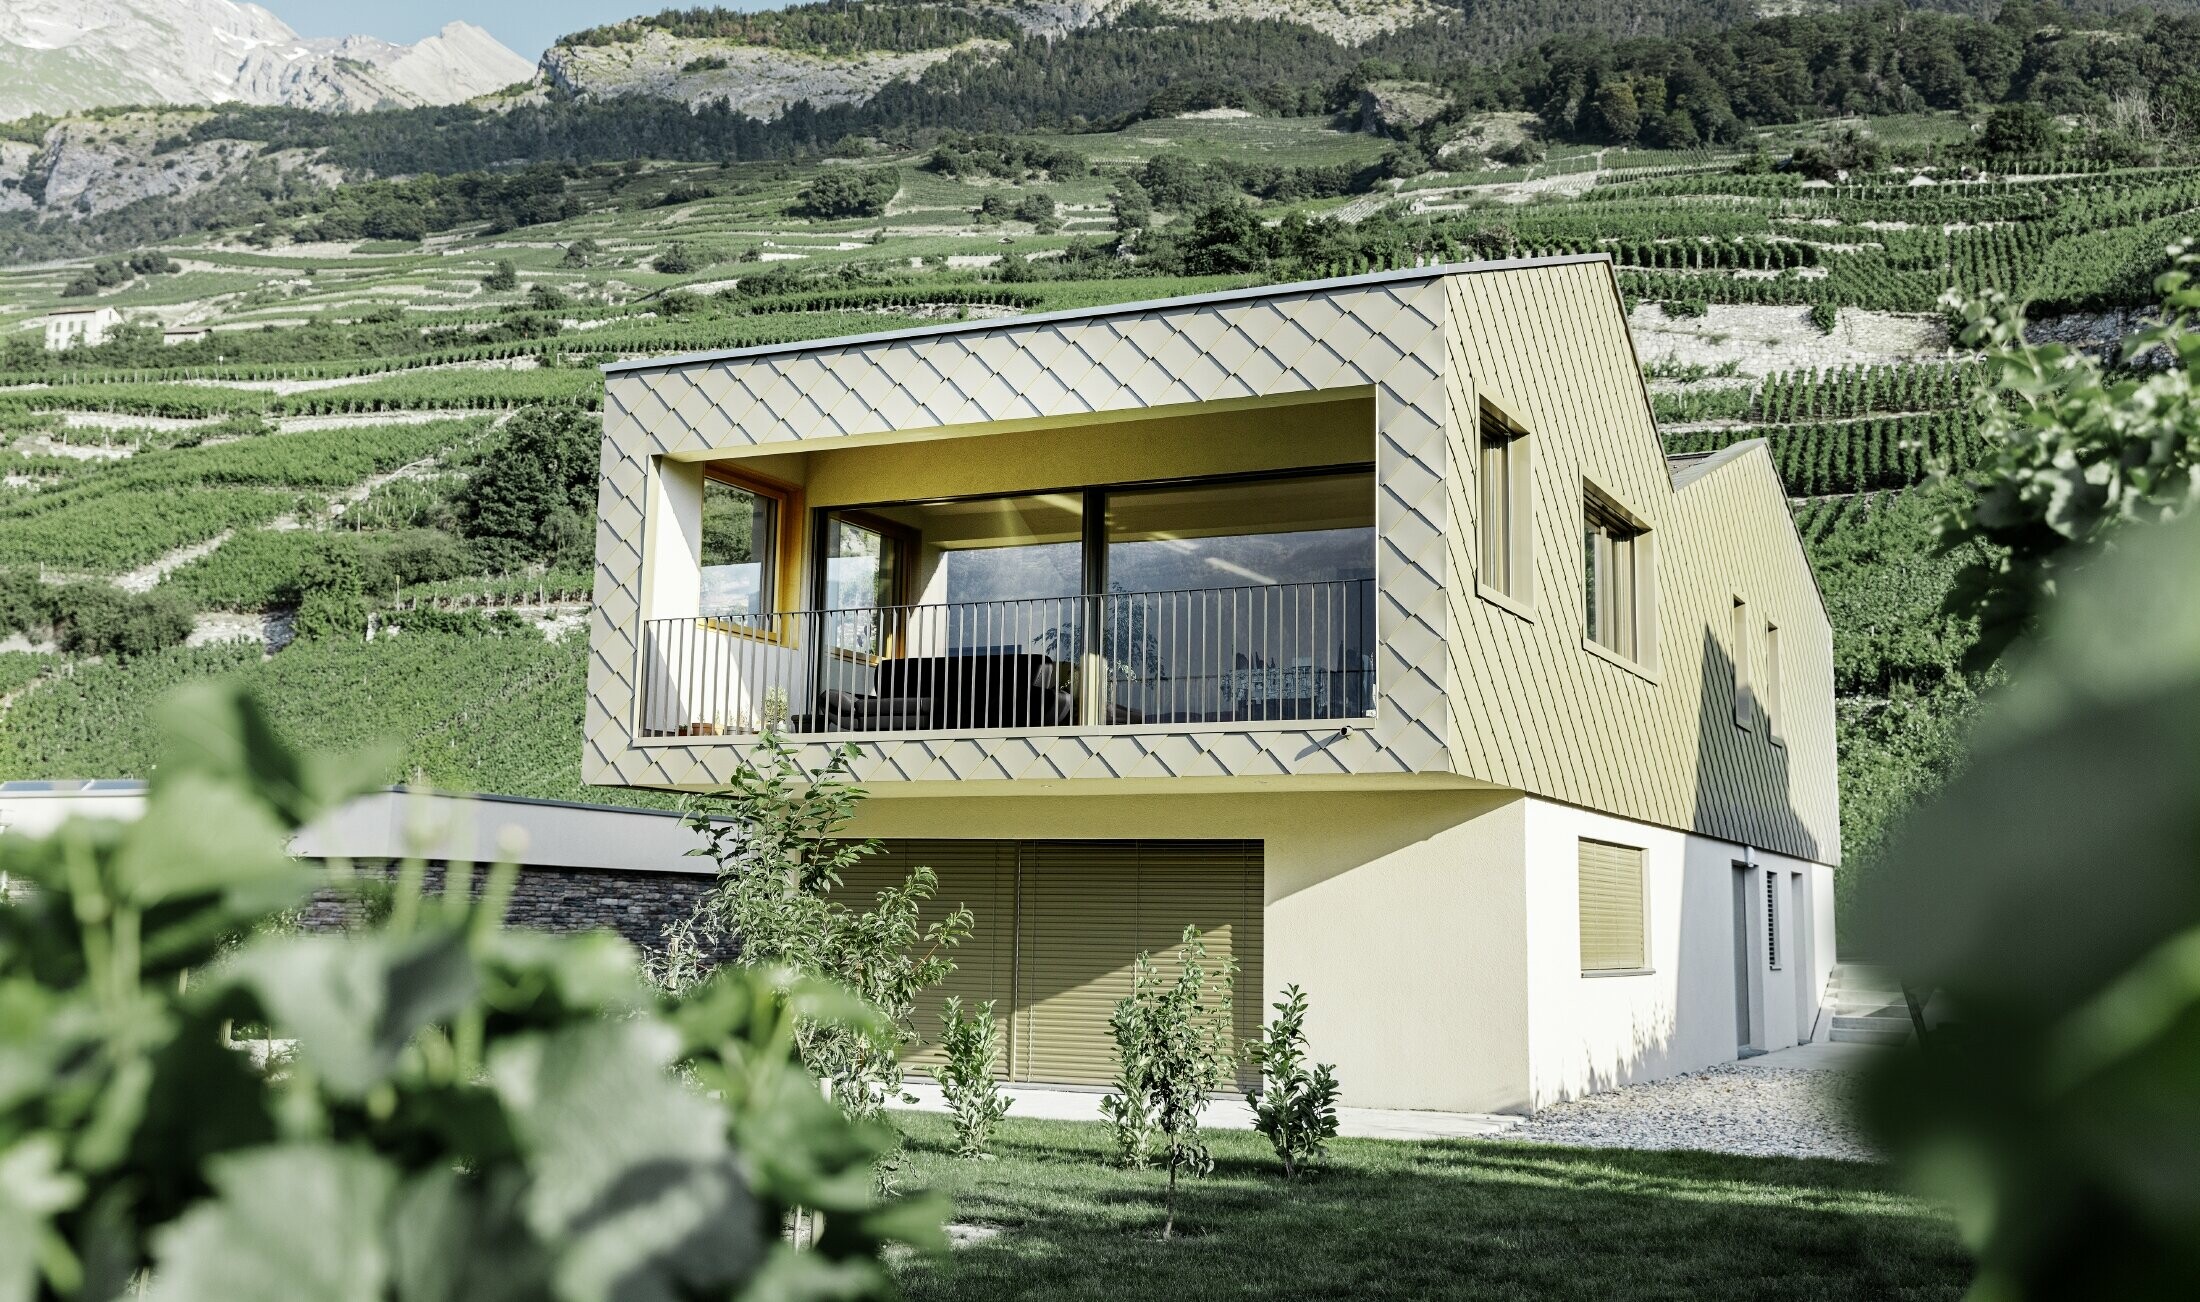 modernes Einfamilienhaus mitten in den Weinbergen des Rhônetals mit 4 unterschiedlichen Dachflächen und offener Galerie mit einer Rautenfassade in bronze